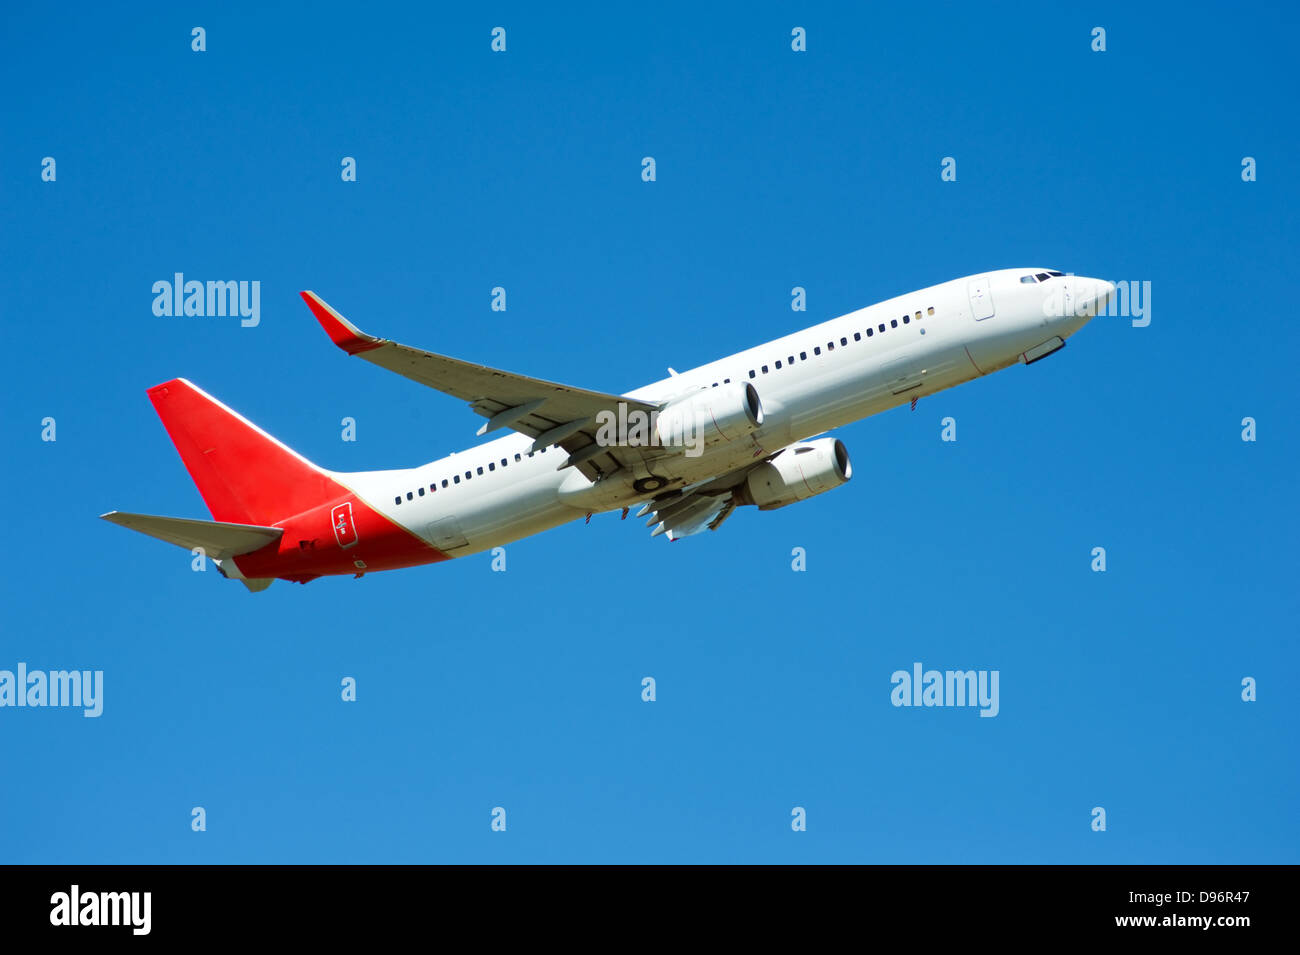 Gran avión de pasajeros volando en el cielo azul Foto de stock